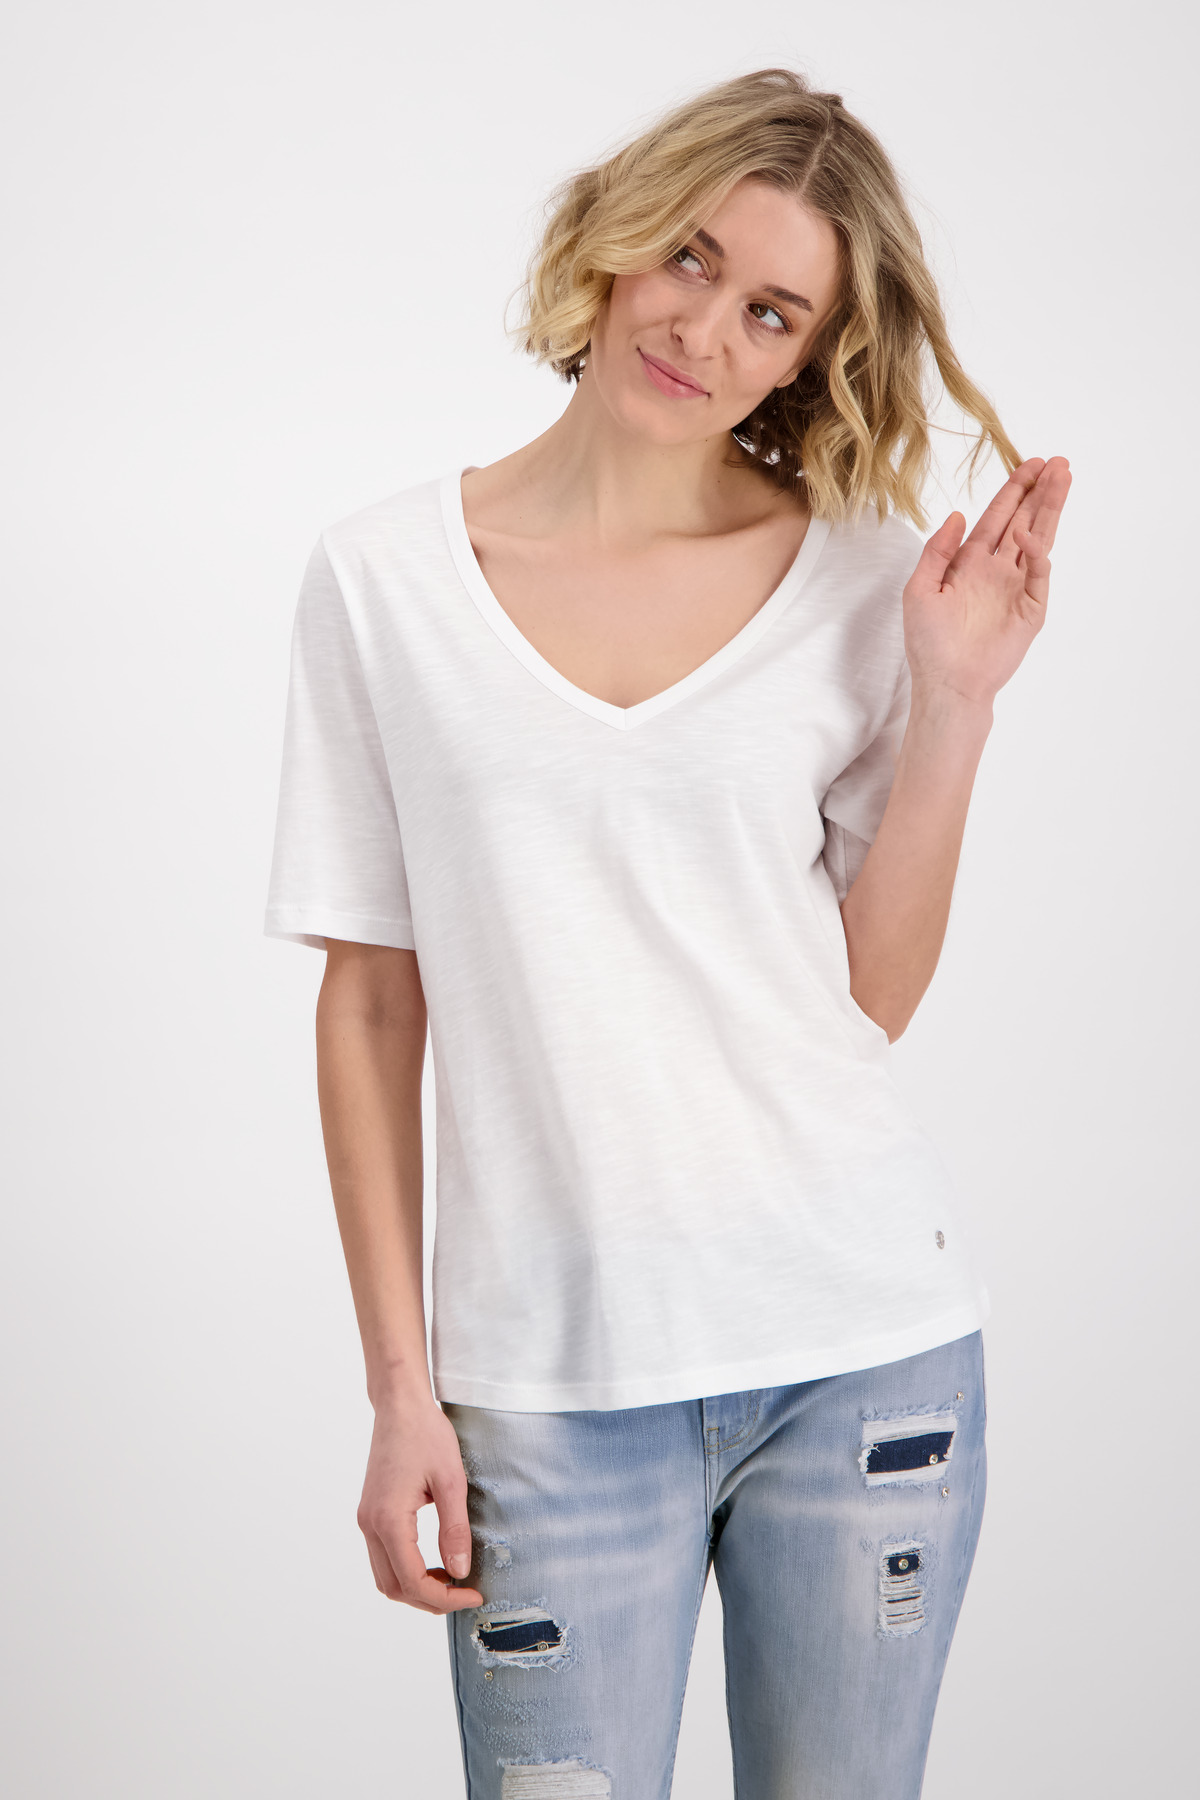 Monari Basic-Flammgarn-Shirt mit Halbarm und V-Ausschnitt in weiß | mode  weber